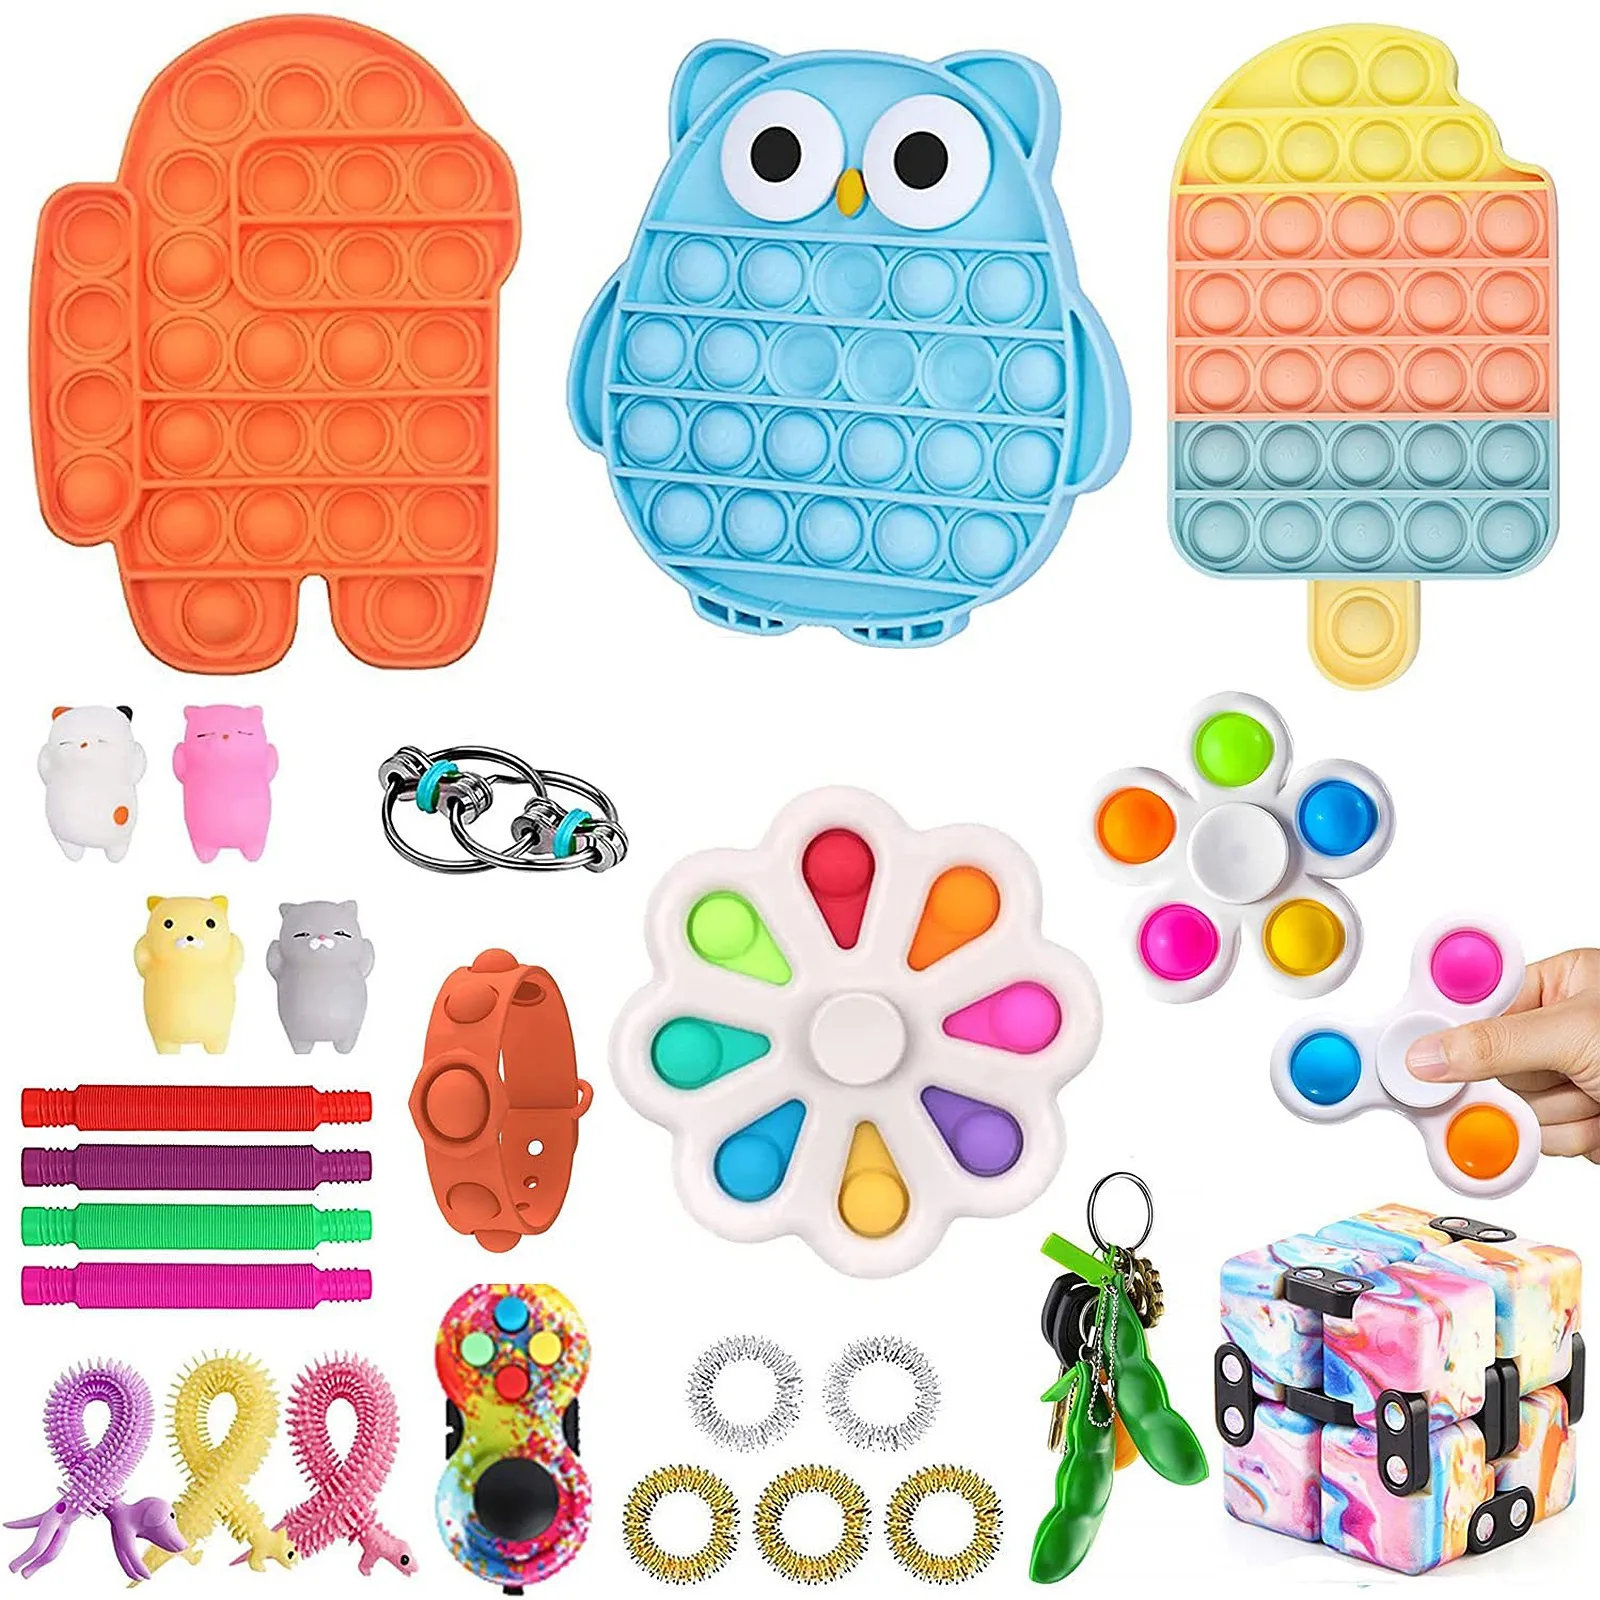 

Игрушки сенсорные СДВГ и аутизм, игрушка для снятия стресса для детей и взрослых, сжимаемые игрушки для снятия стресса с рук